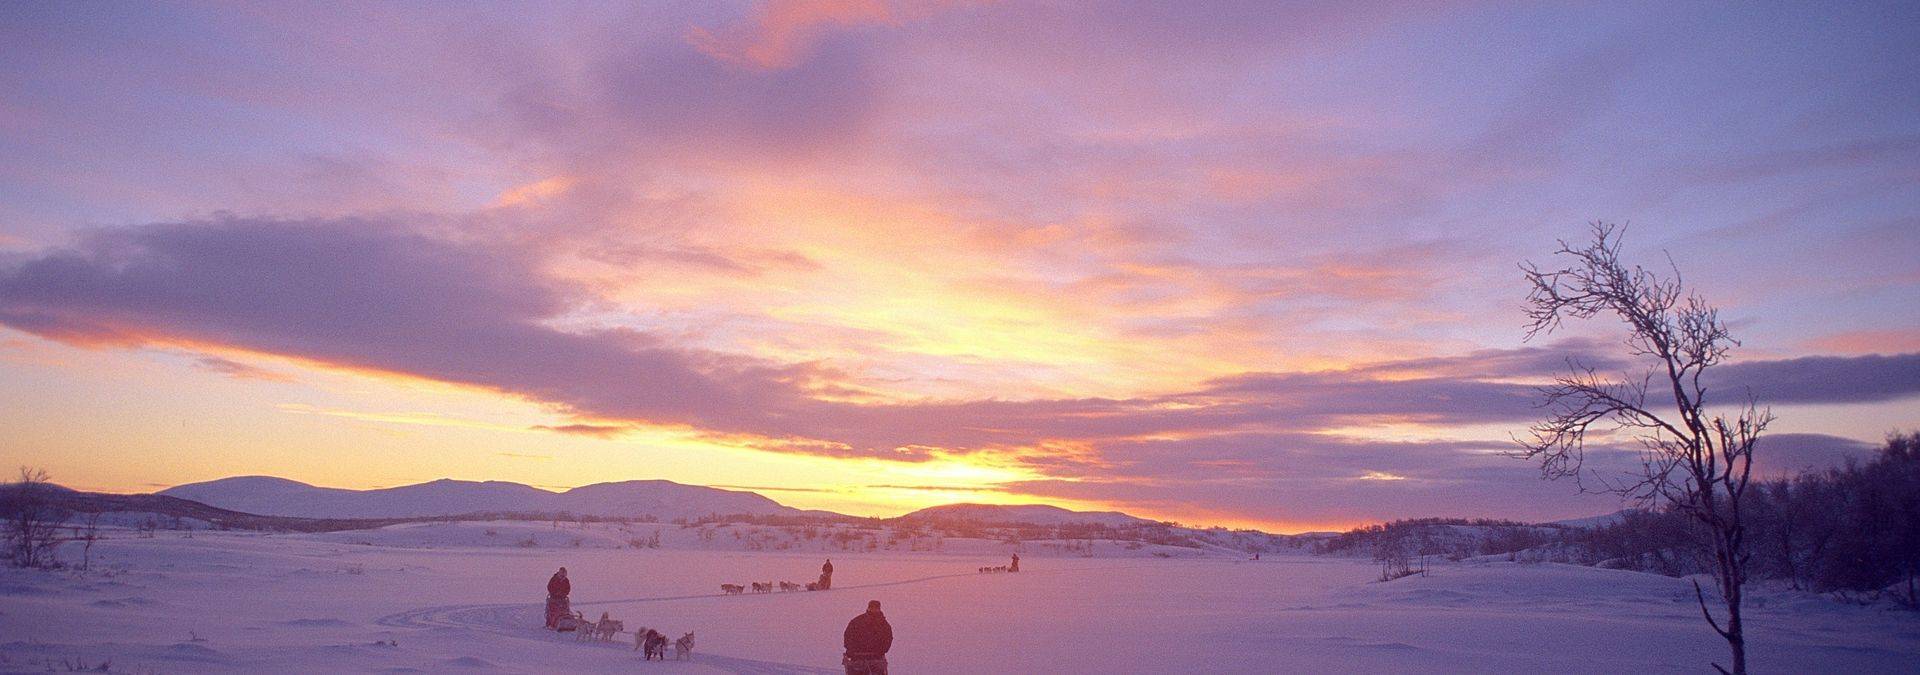 Huskygespanne in der Polarnacht, Norwegen Credit Björn Klauer & Nord Norge